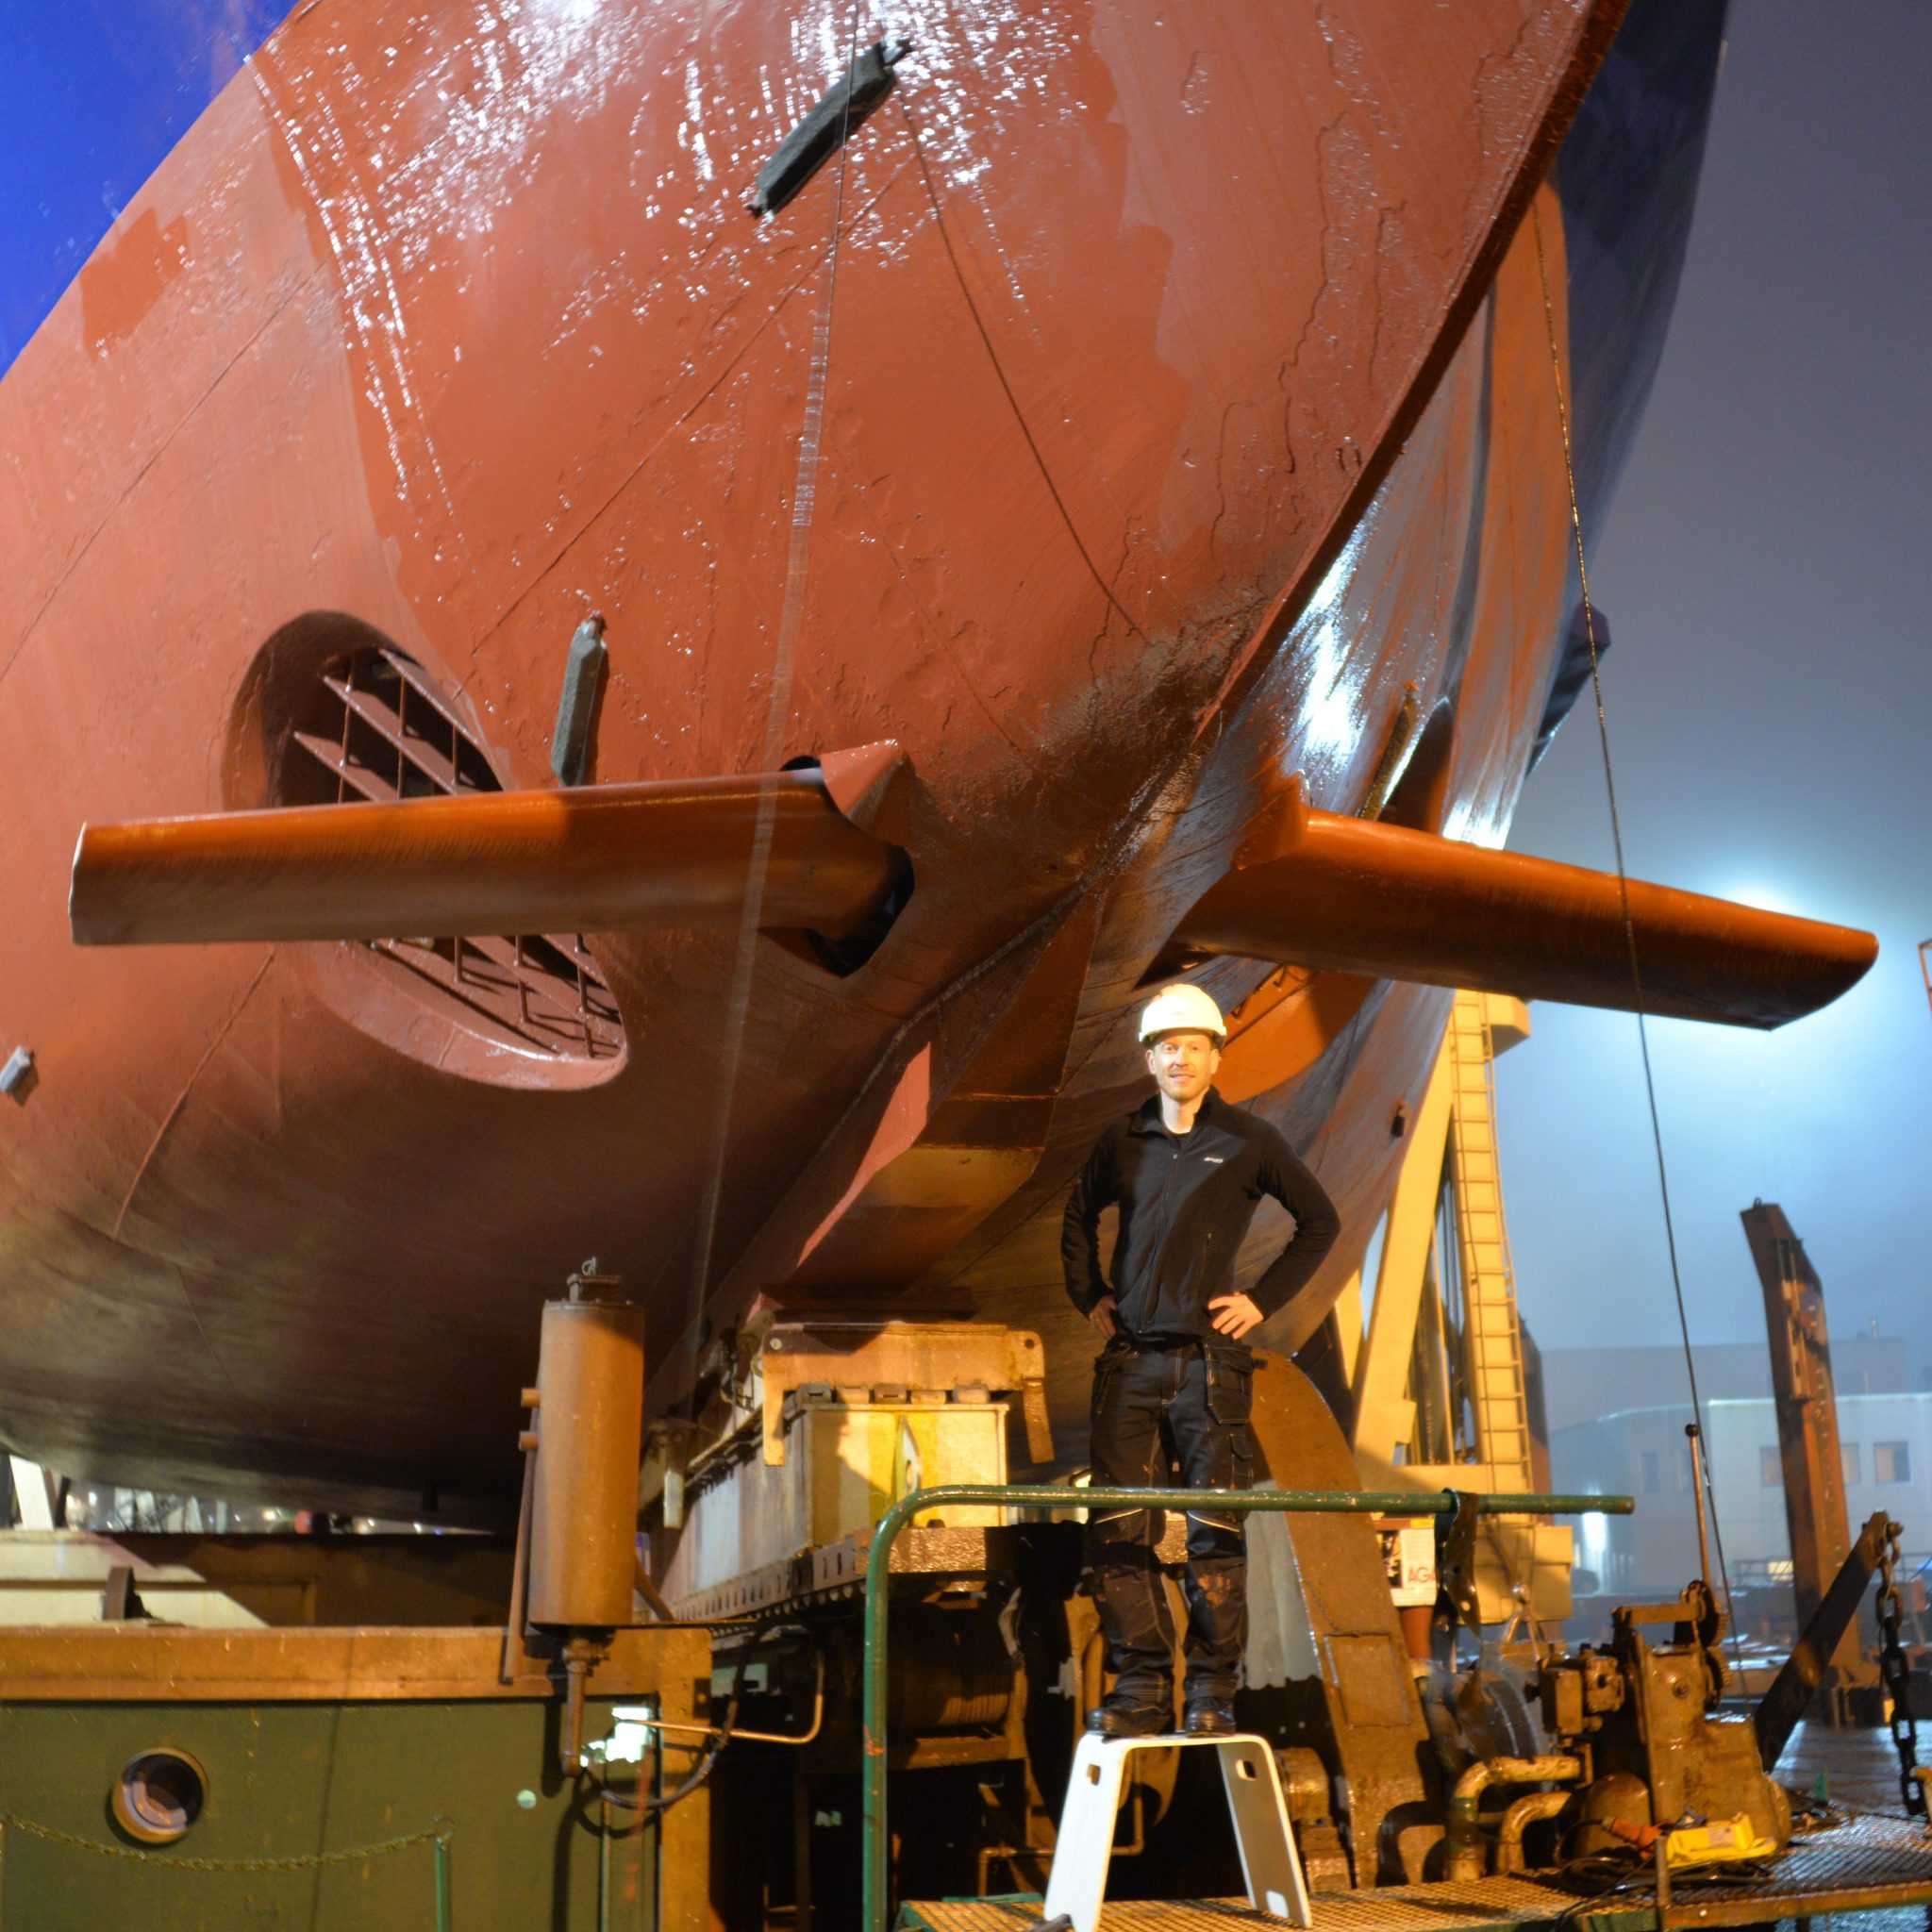 CEO Eirik Bøckmann van Wavefoil voor de boeg van de ferry Teistin. Een praktijkproef van een jaar met de twee vleugels van 2,64 meter lang resulteerde in een brandstofbesparing van 8%. (Foto Wavefoil)